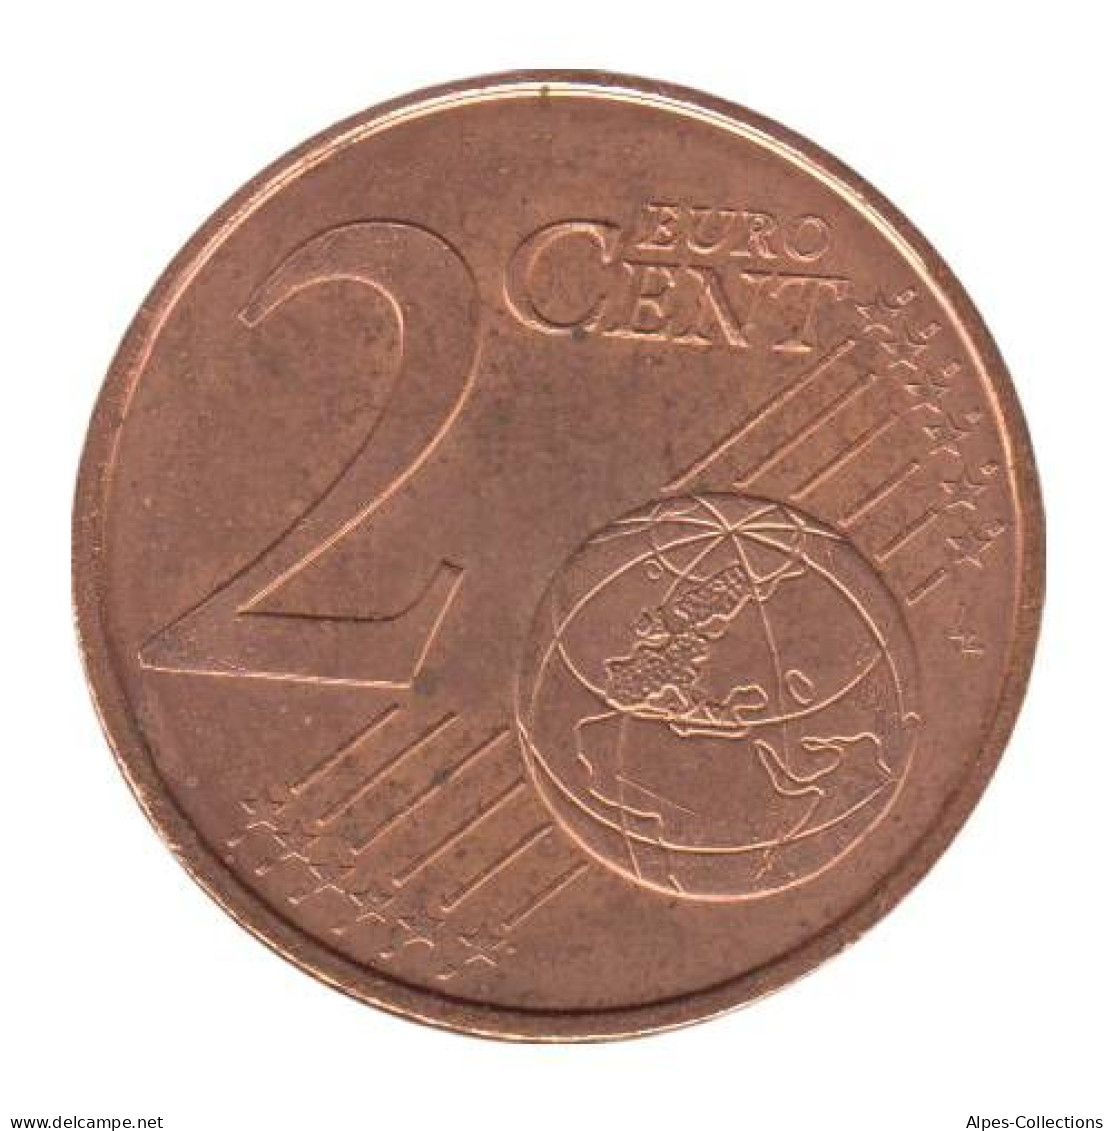 FR00204.1 - FRANCE - 2 Cents - 2004 - France